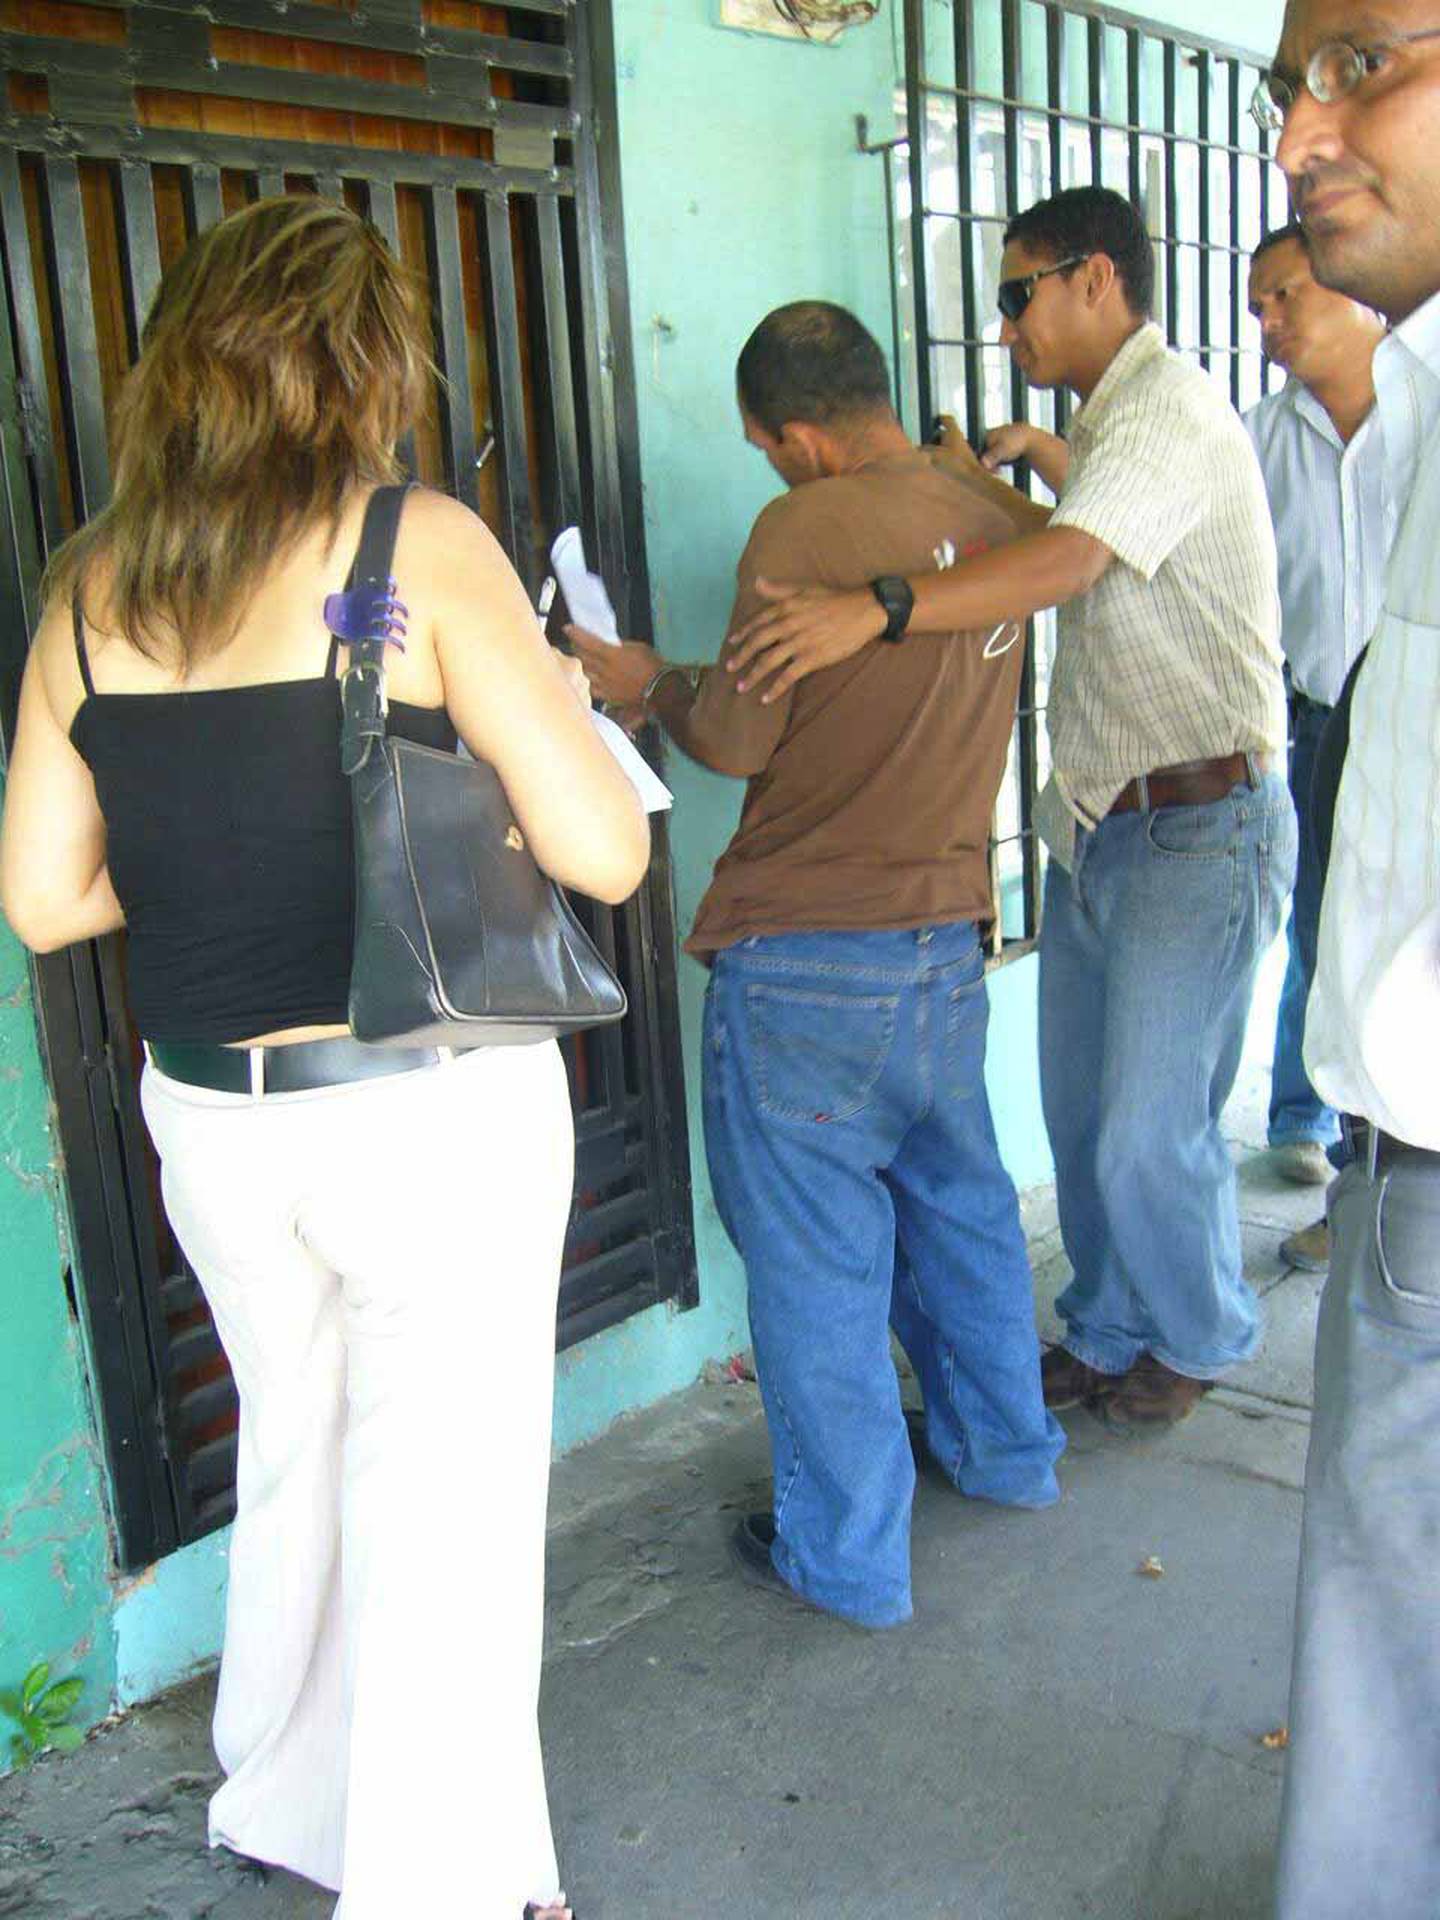 Homicidio de Carlos Manuel Silva Zapata, ocurrido en febrero del 2007. Foto Ronny Soto.